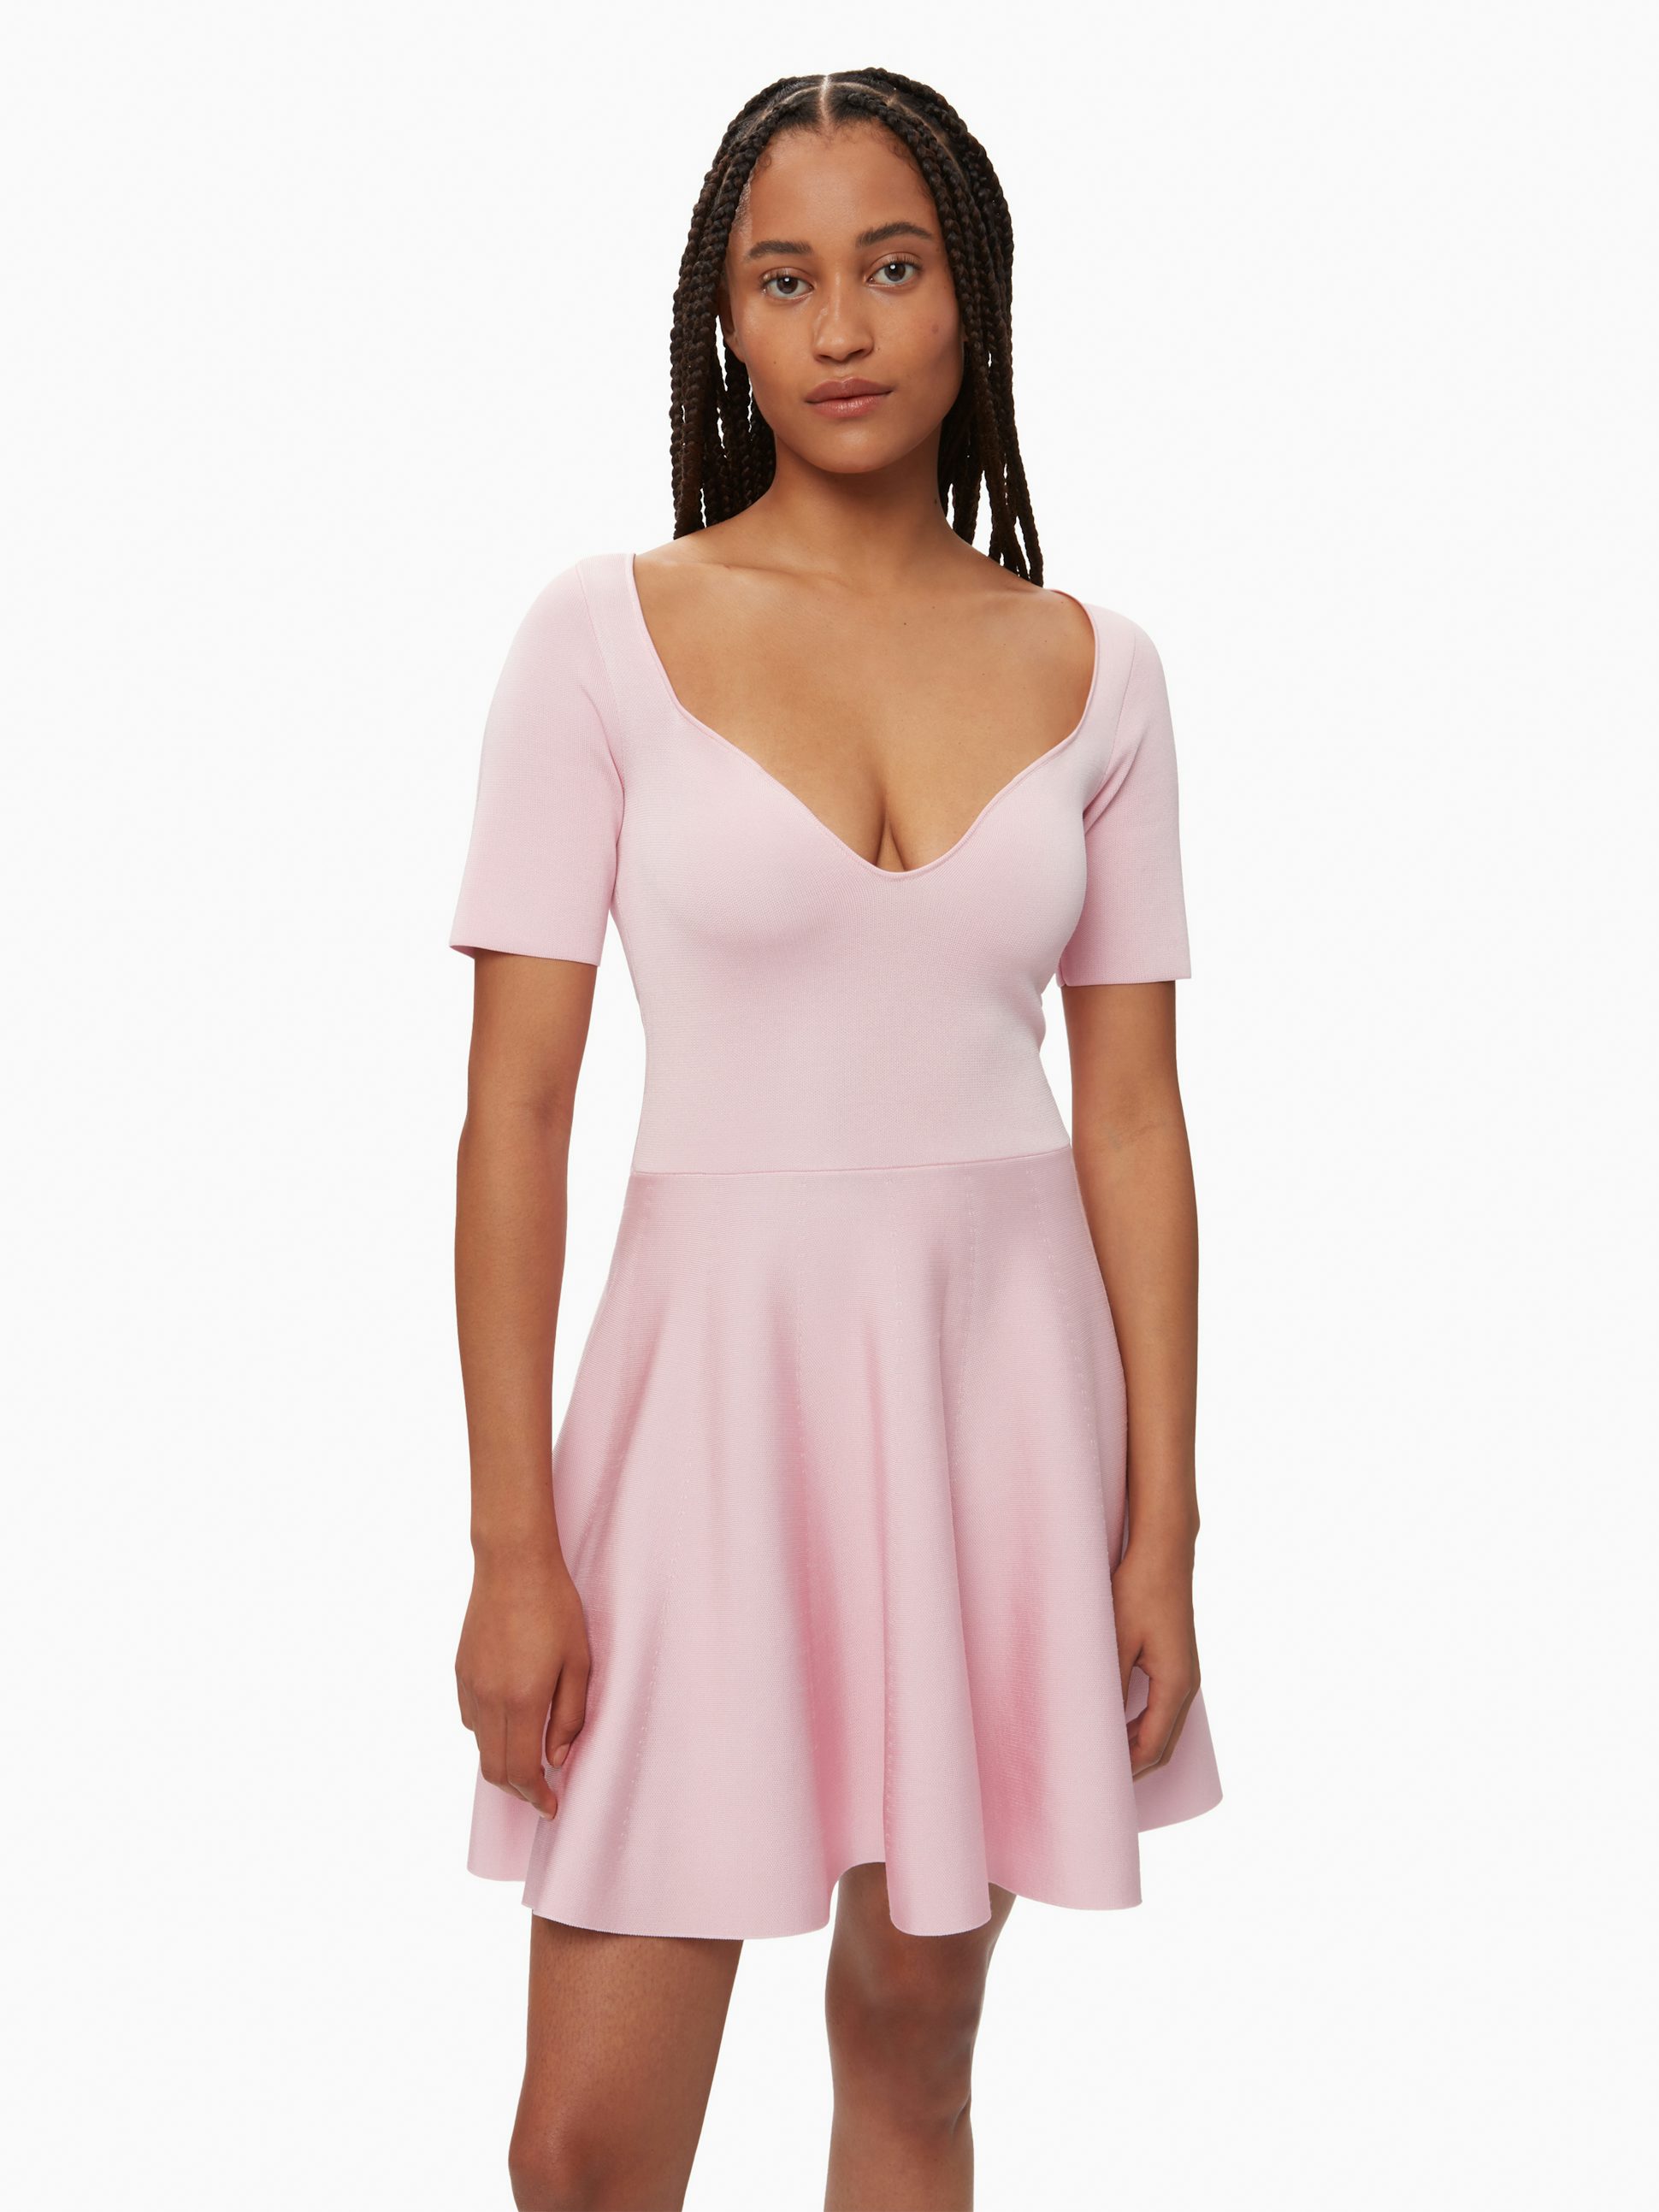 Heart neckline flared dress in pink - Nina Ricci